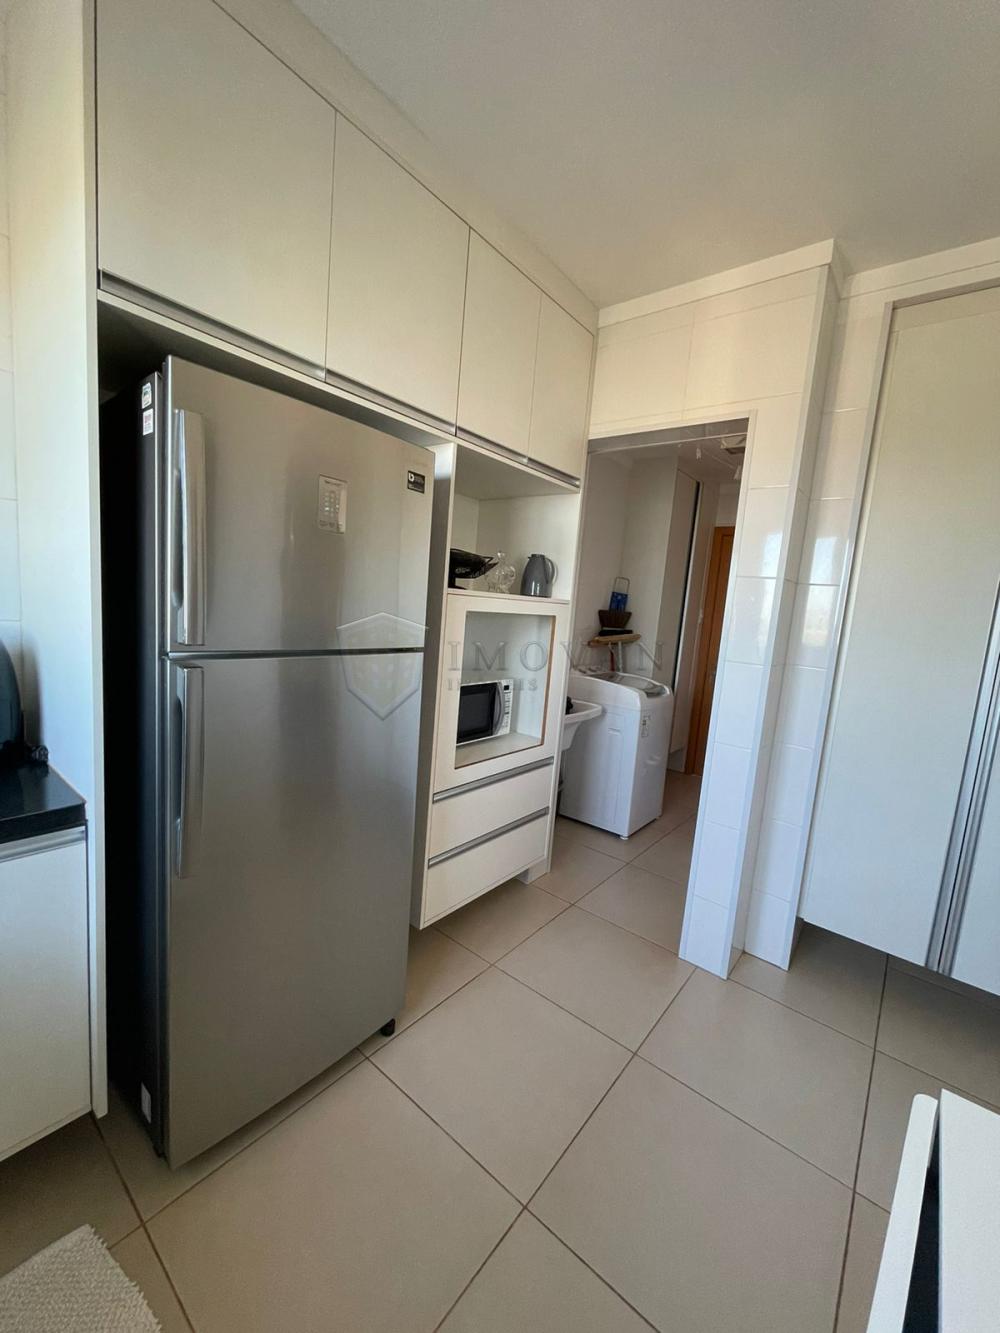 Comprar Apartamento / Padrão em Ribeirão Preto R$ 695.000,00 - Foto 4